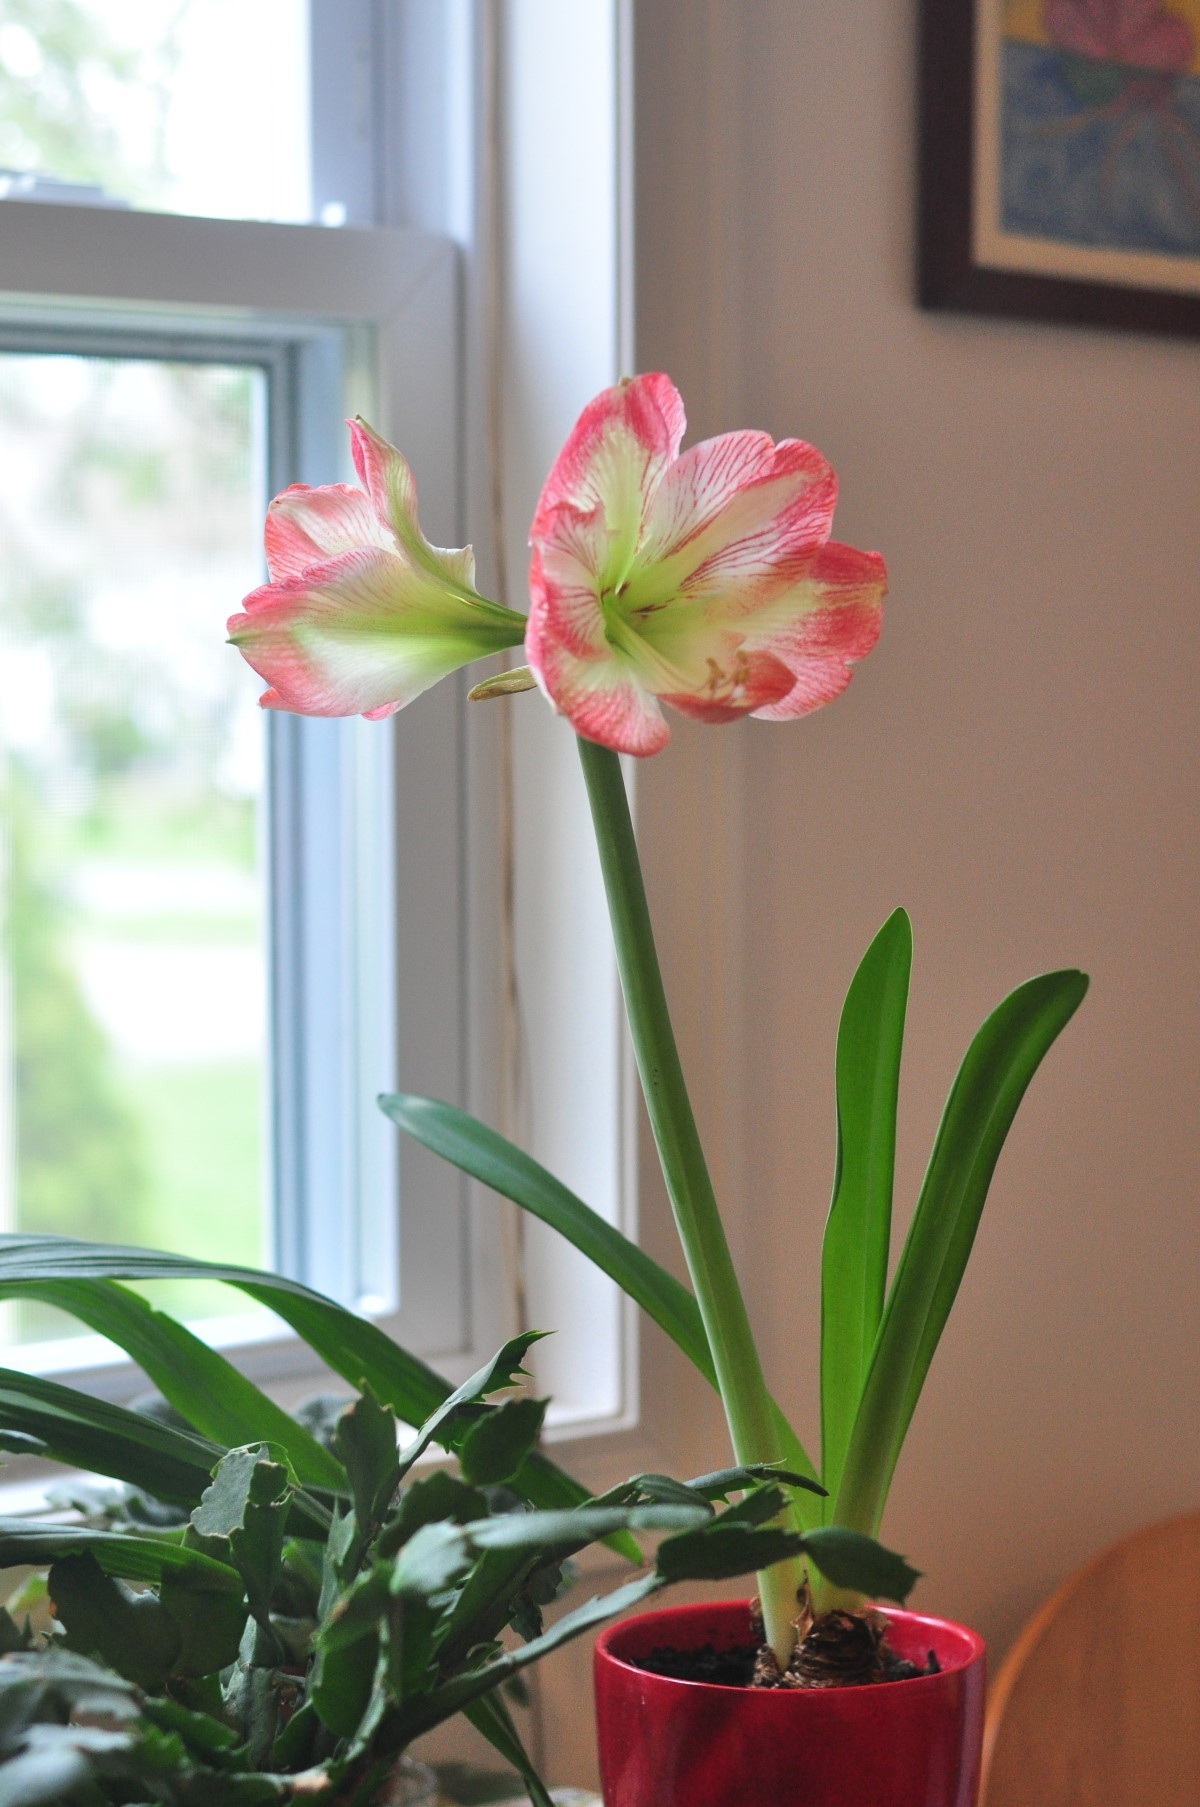 Coloque o vaso com a flor numa janela iluminada, na varanda de vidro ou no jardim (Foto: Unsplash / I Do Nothing But Love / CreativeCommons)